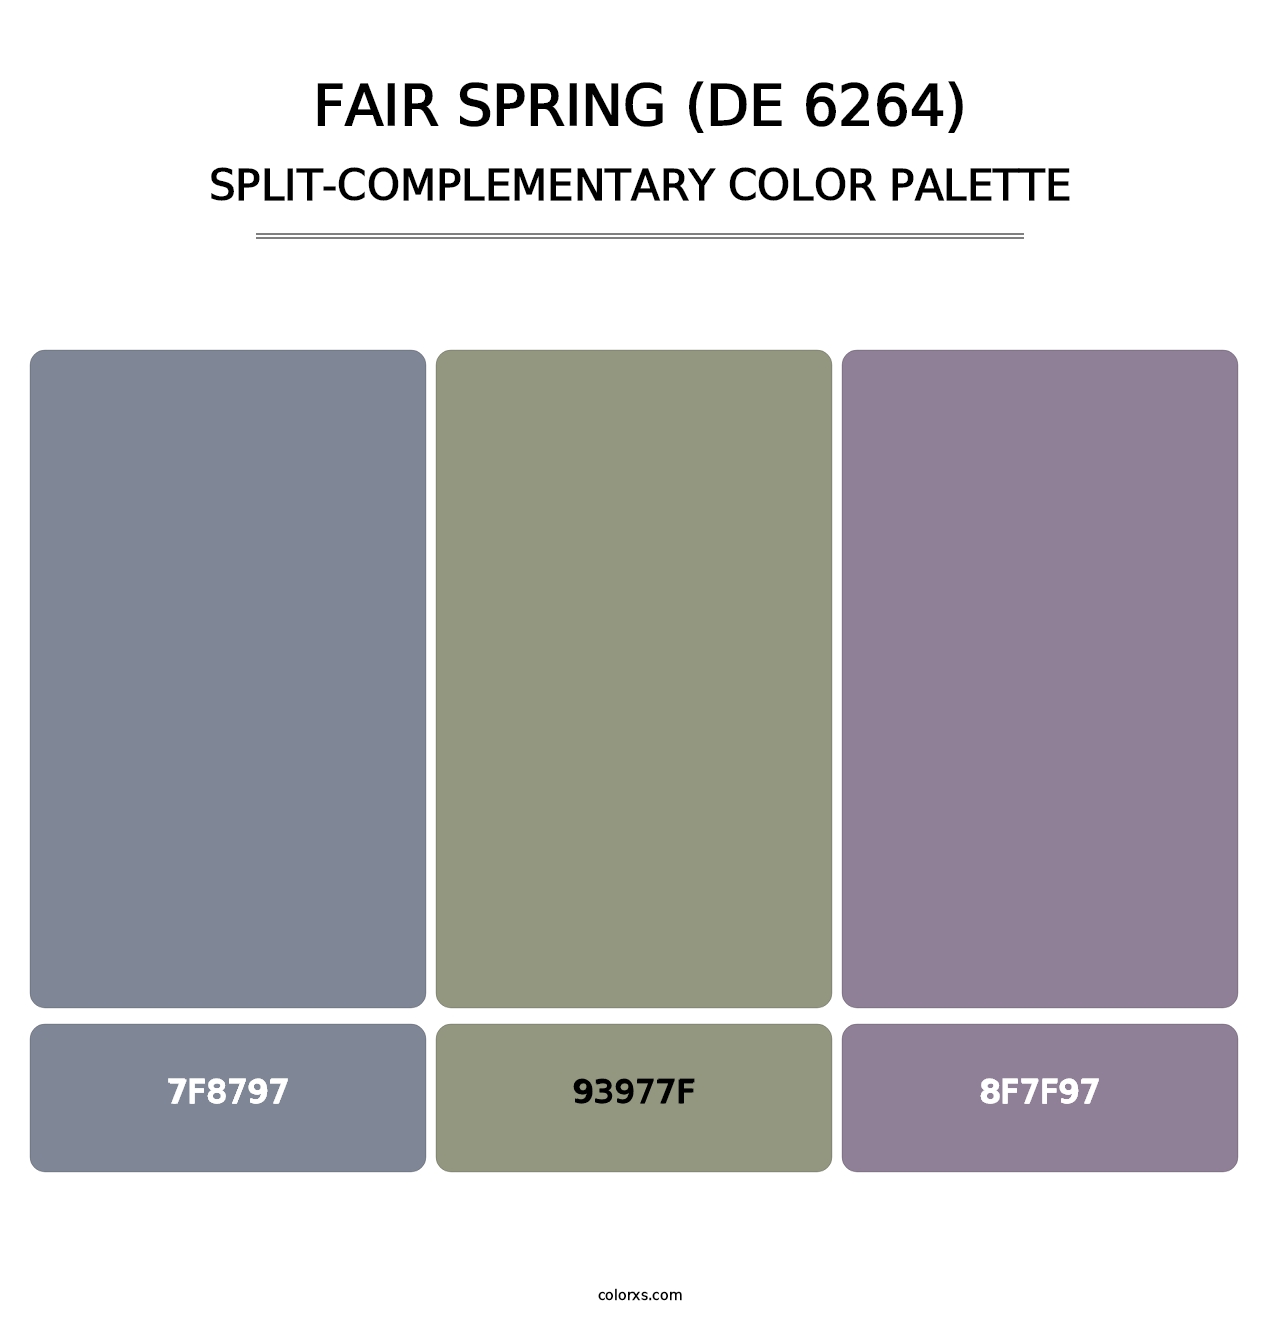 Fair Spring (DE 6264) - Split-Complementary Color Palette